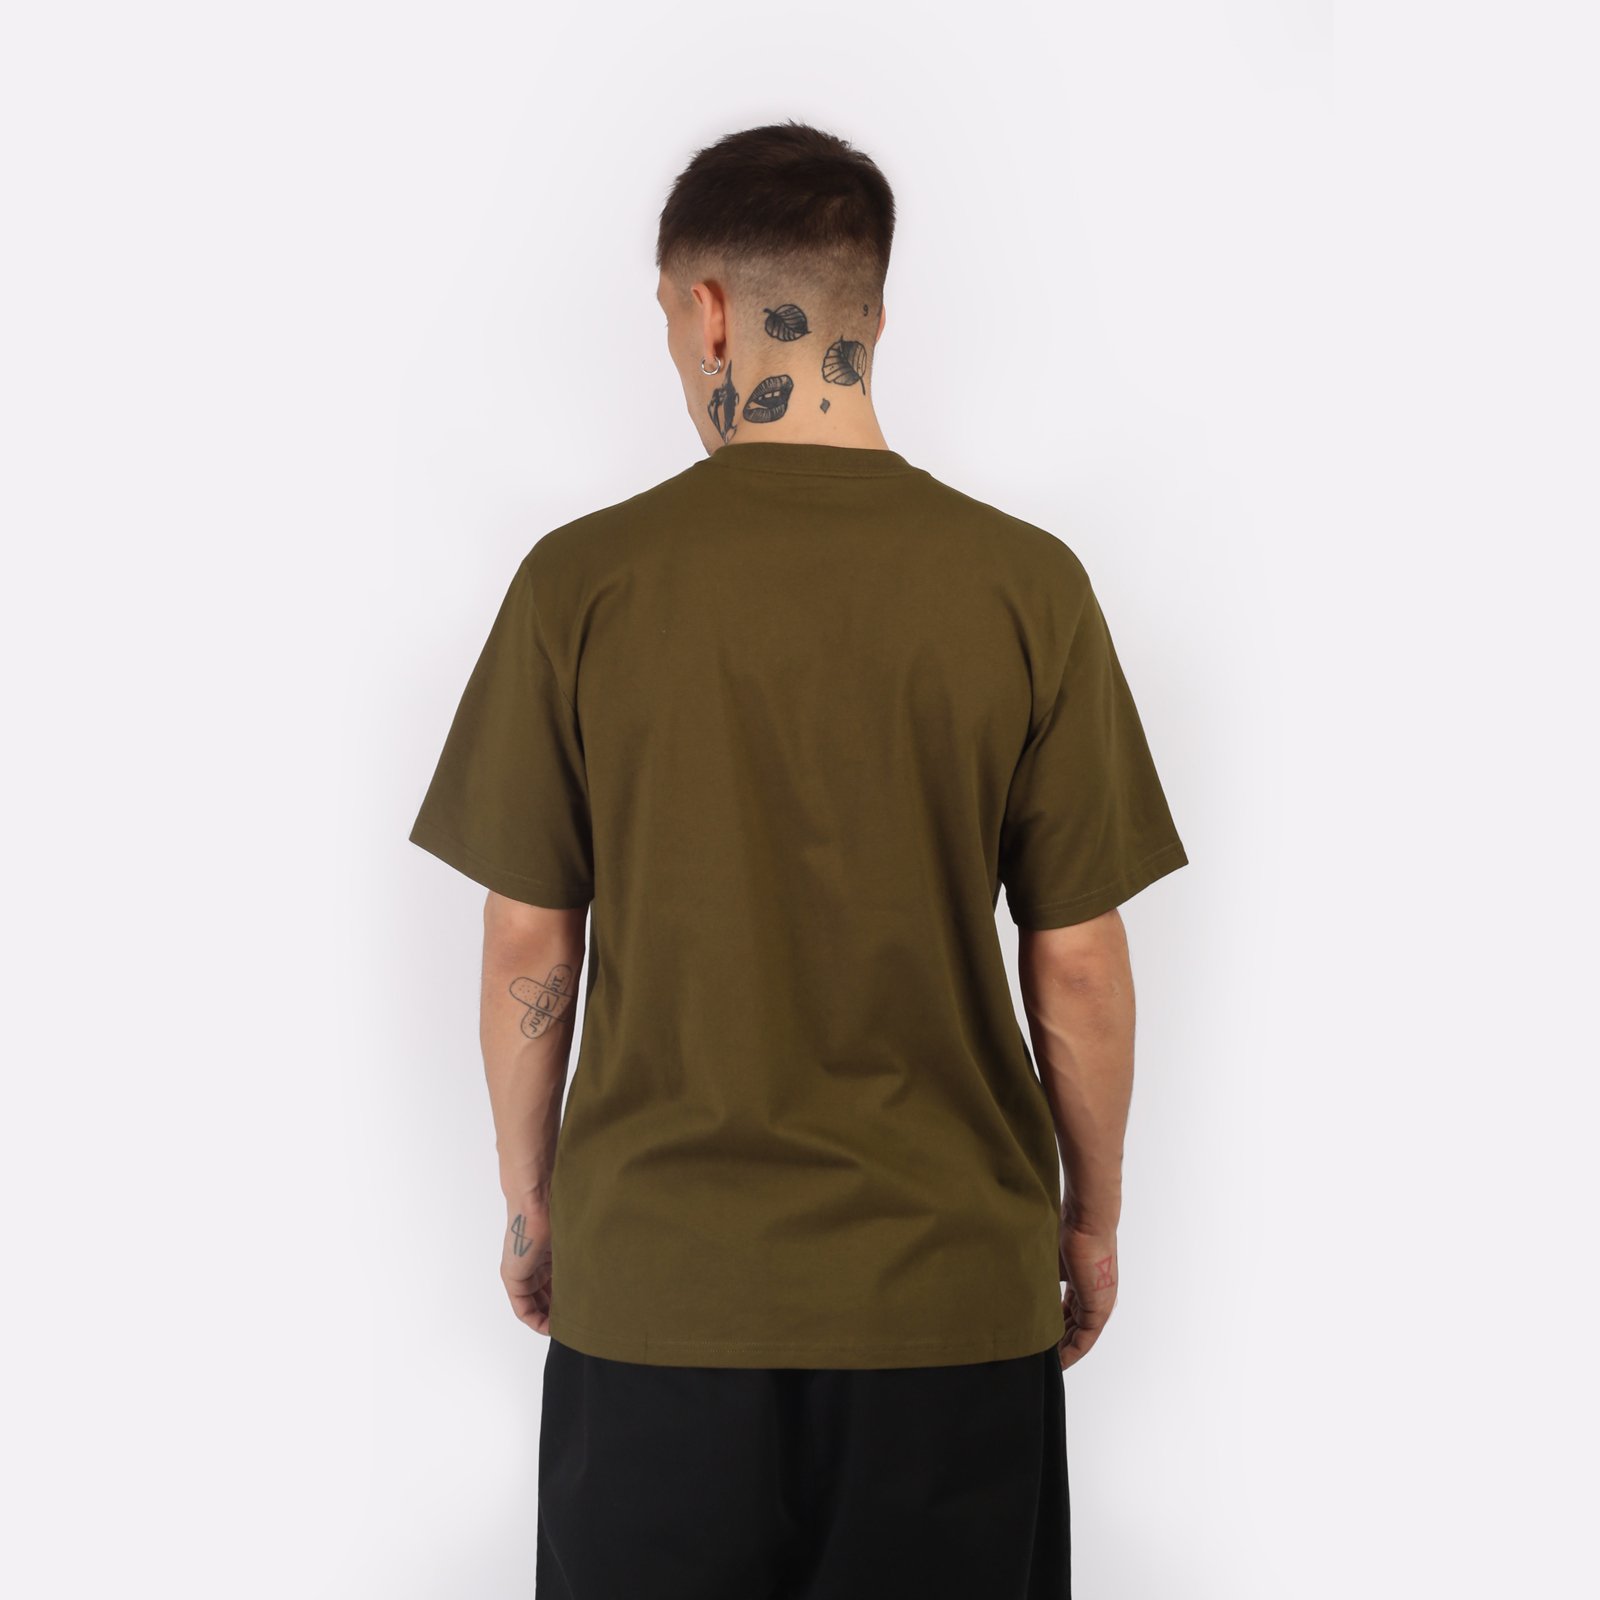 мужская коричневая футболка Carhartt WIP S/S University T-Shirt I028990-lumber/white - цена, описание, фото 2